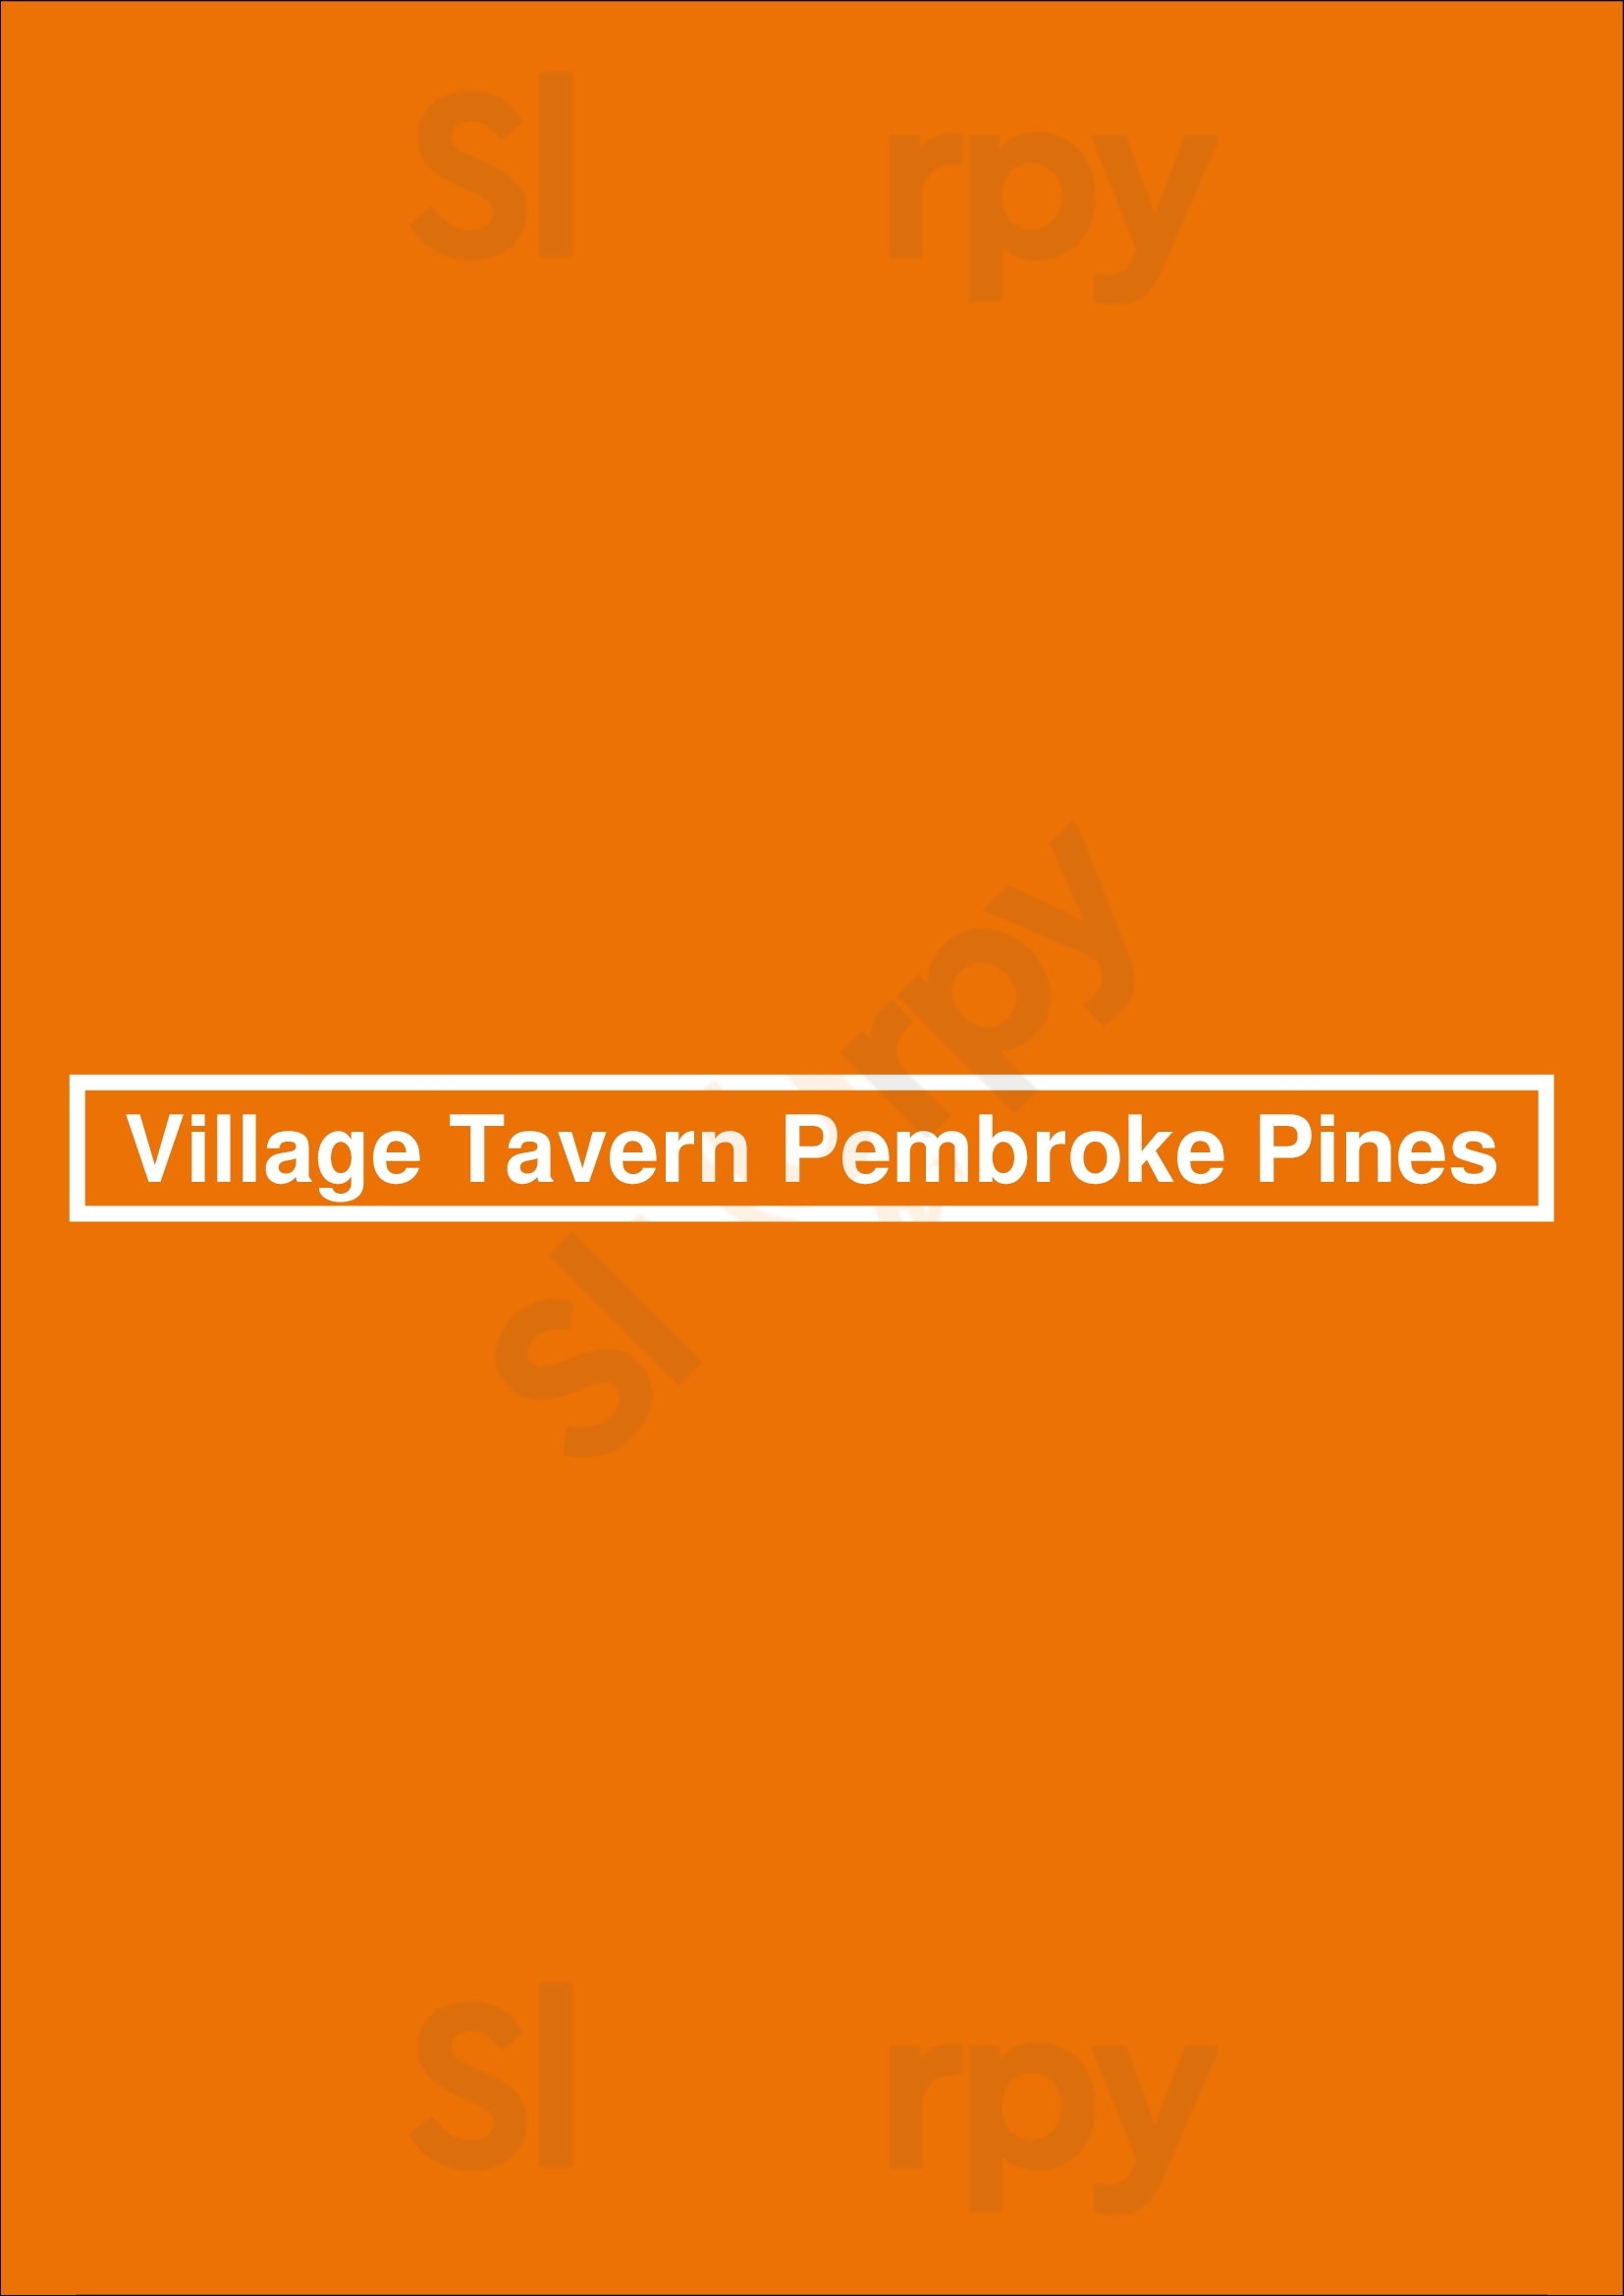 Village Tavern Pembroke Pines Menu - 1